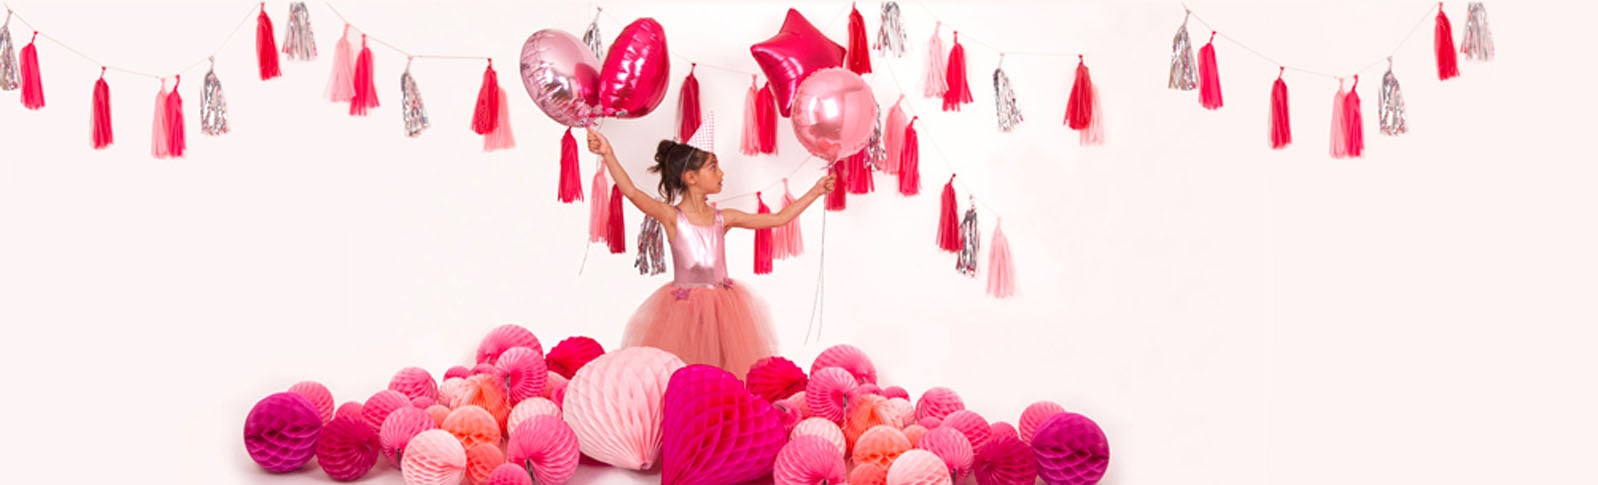 Ideas for princess themed birthday girl